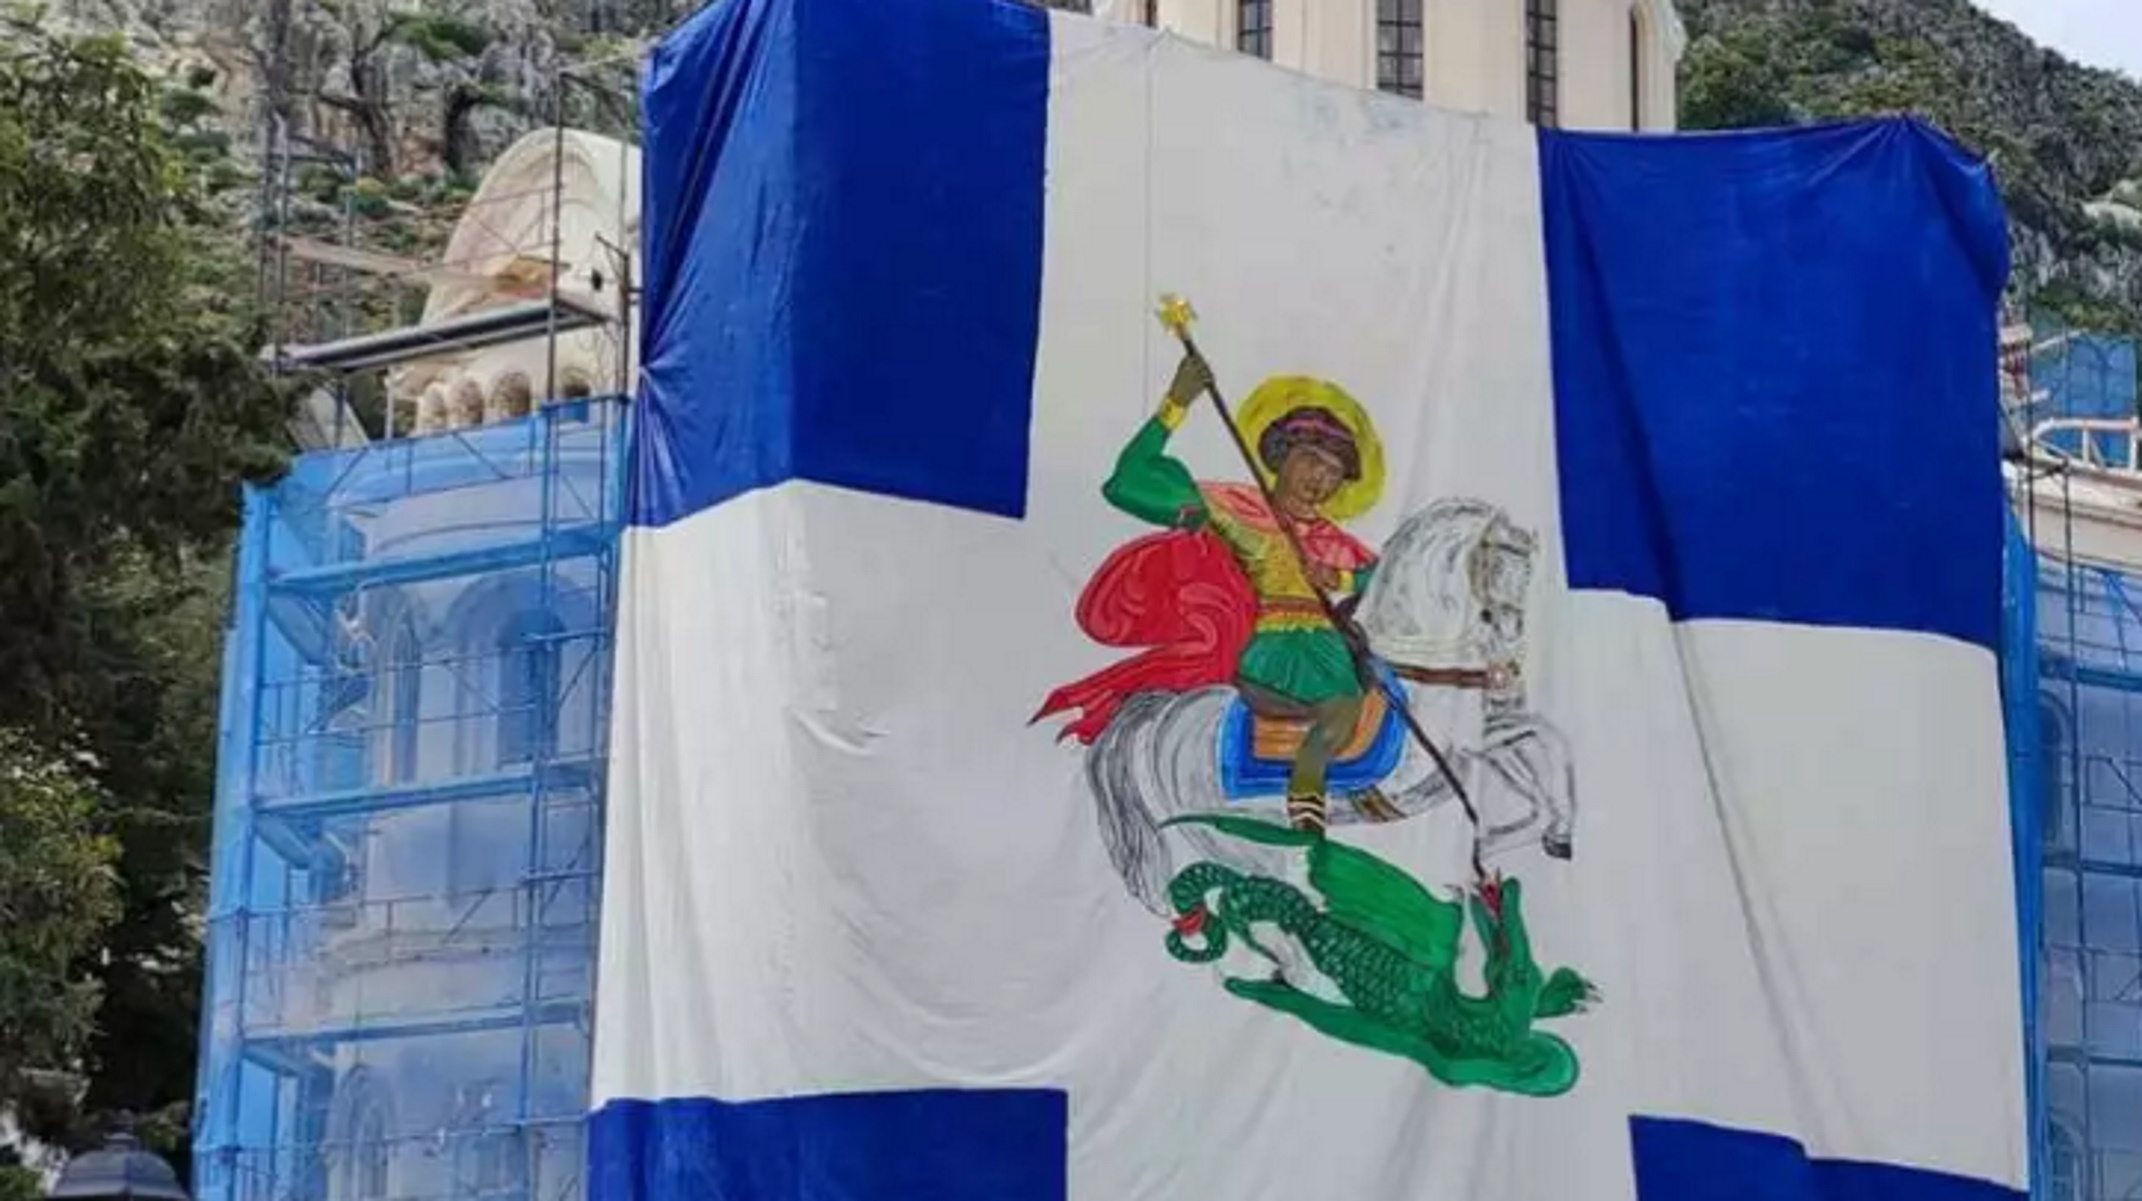 Τάκης Θεοδωρικάκος: Η Ελληνική σημαία με τον Αη Γιώργη στο Καστελόριζο στέλνει ξεκάθαρο μήνυμα